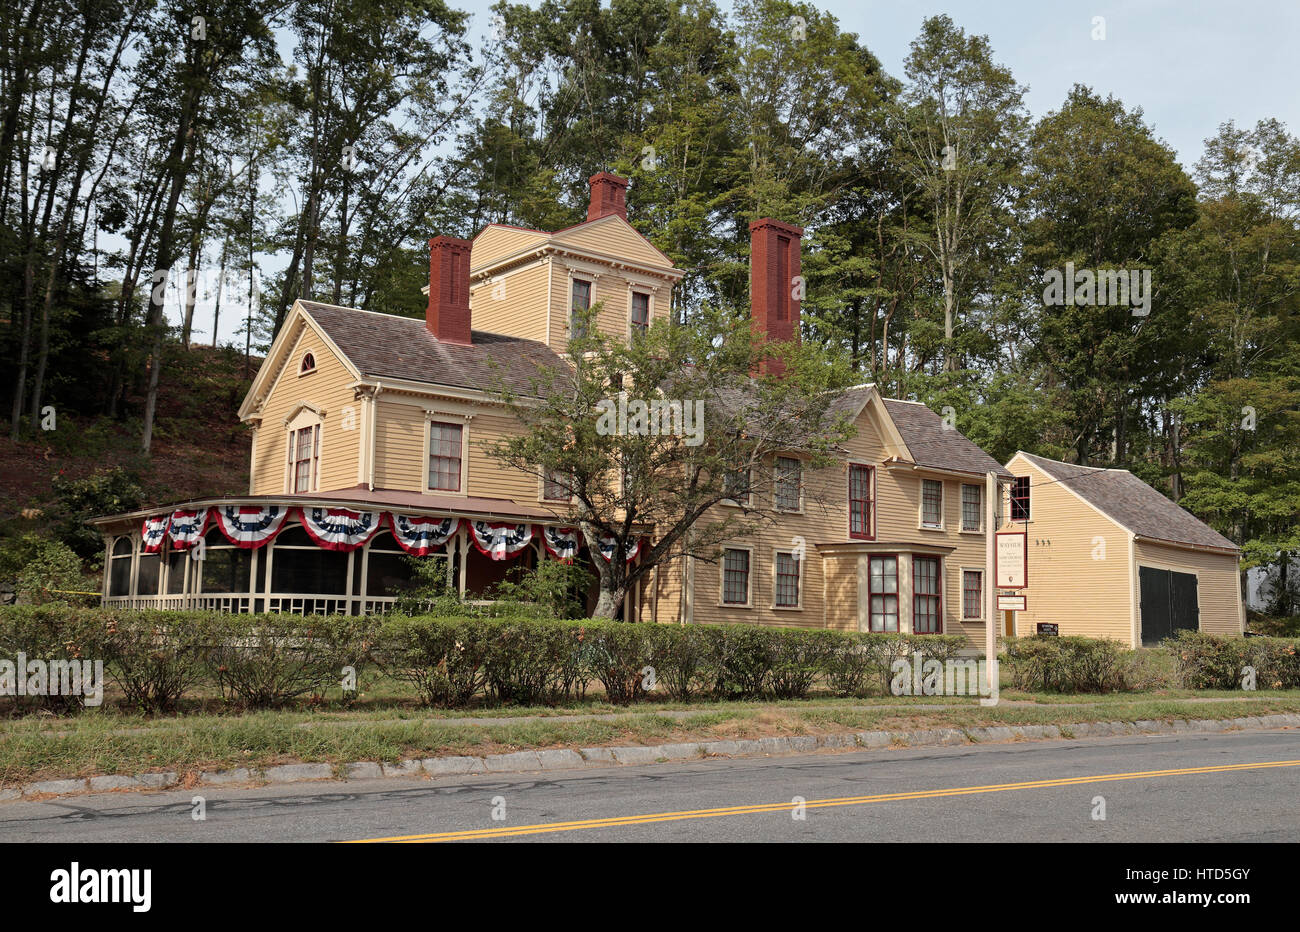 Die Strecke ist ein historisches Haus in Concord, Massachusetts, die einst die Heimat der "Little Women" schon, Louisa May Alcott. Stockfoto